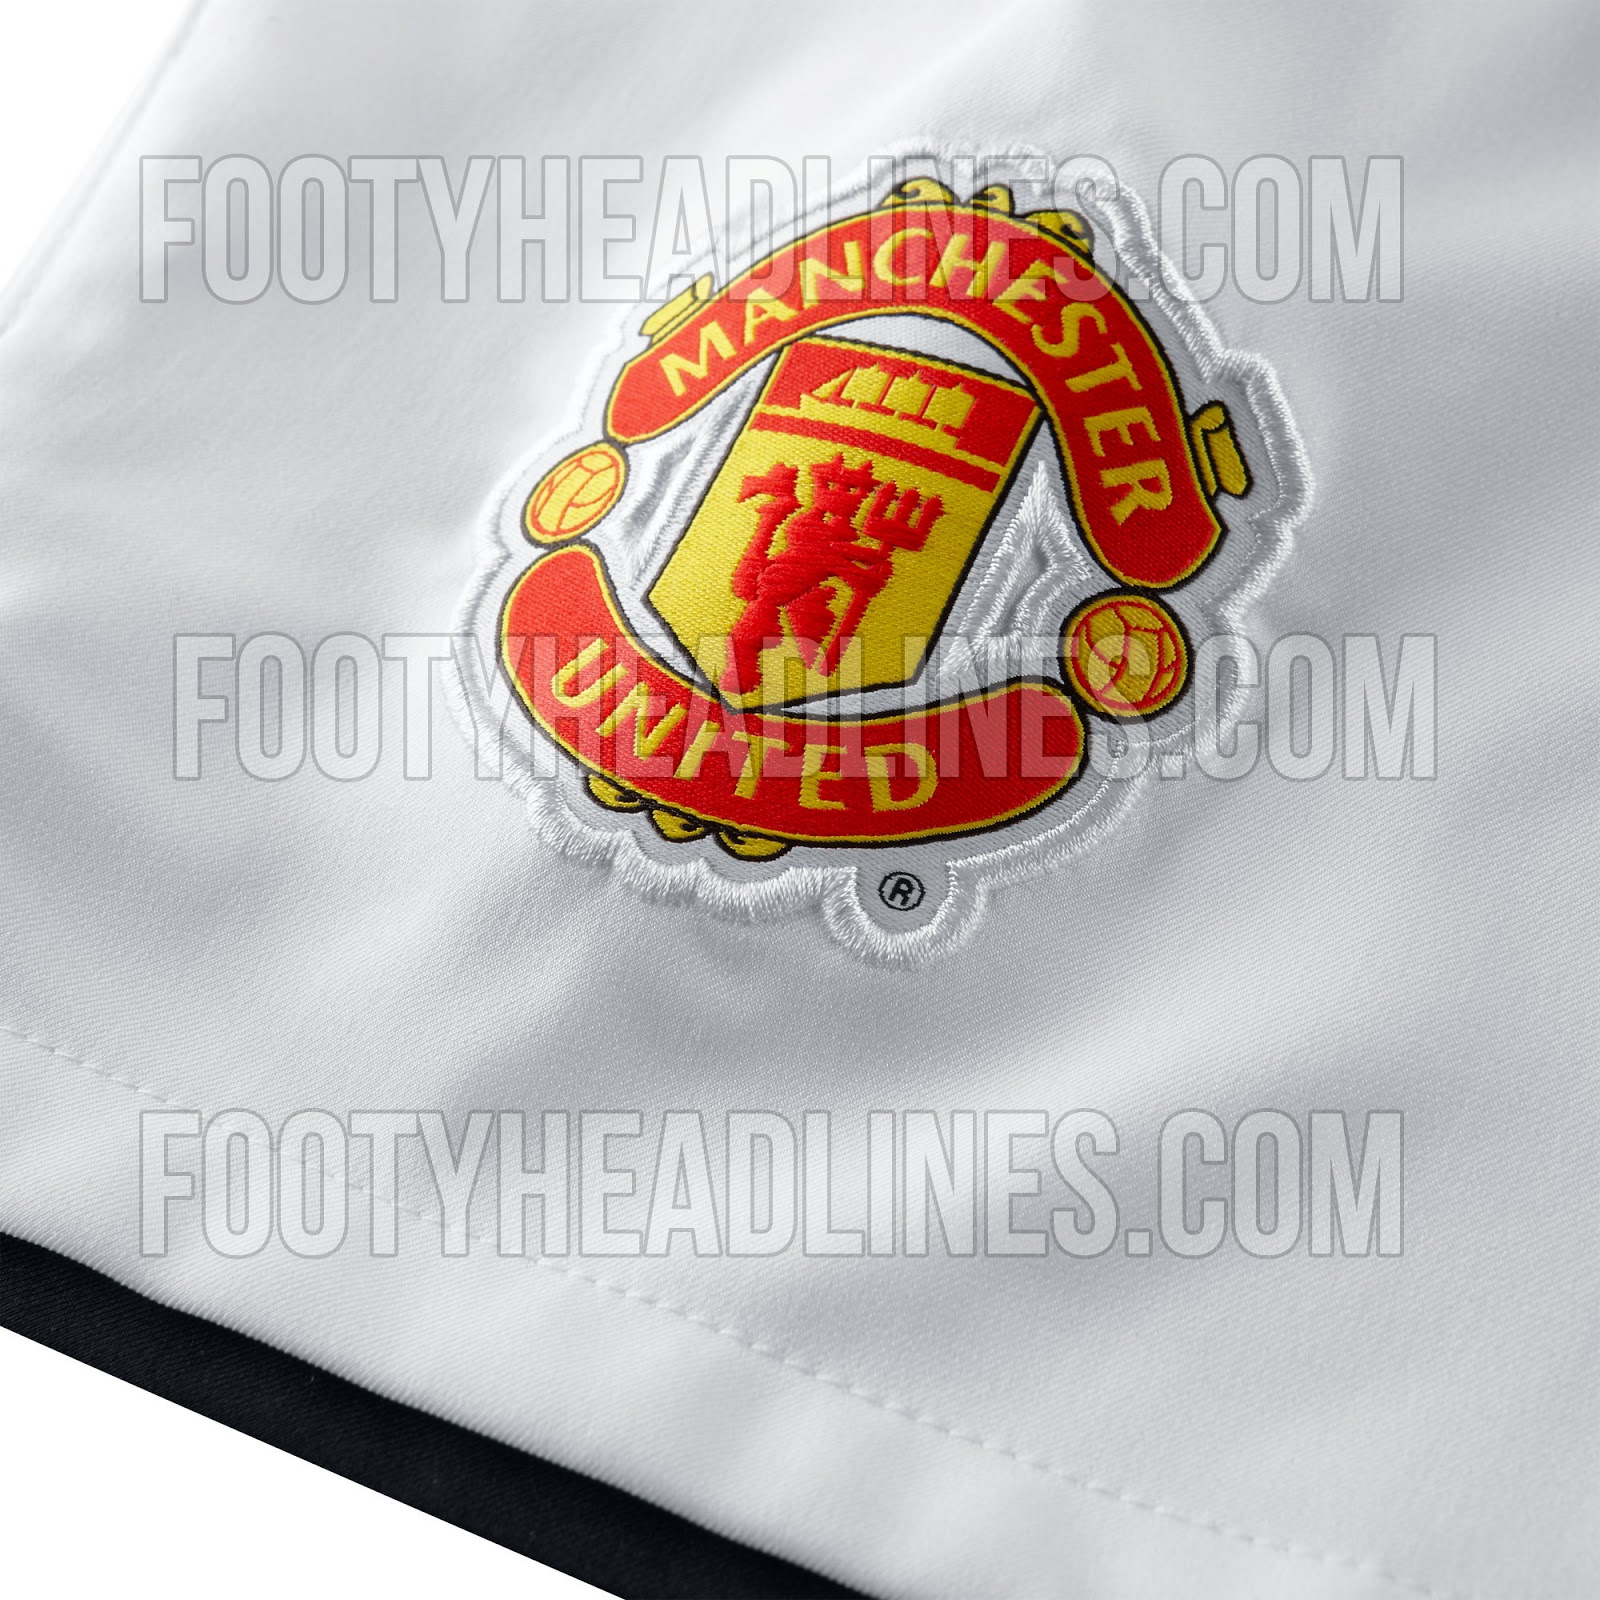 Manchester-United-13-14-Home-Kit-Shorts-Detailed.jpg